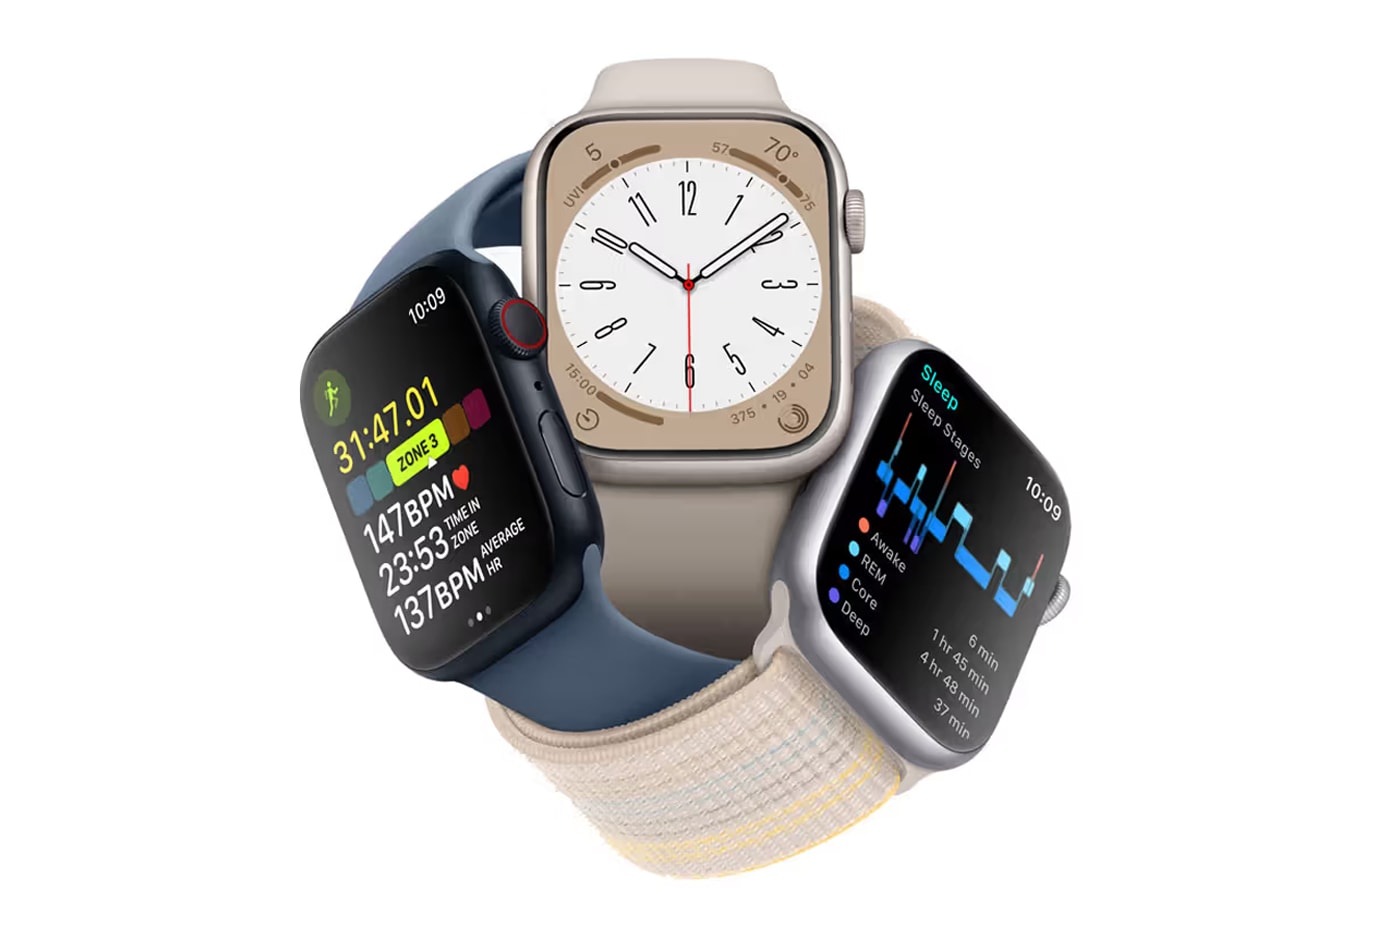 Apple Revamp Redesign watchOS Widgets Focus Interface 10 Software Update Apps Details Bloomberg Mark Gurman Report